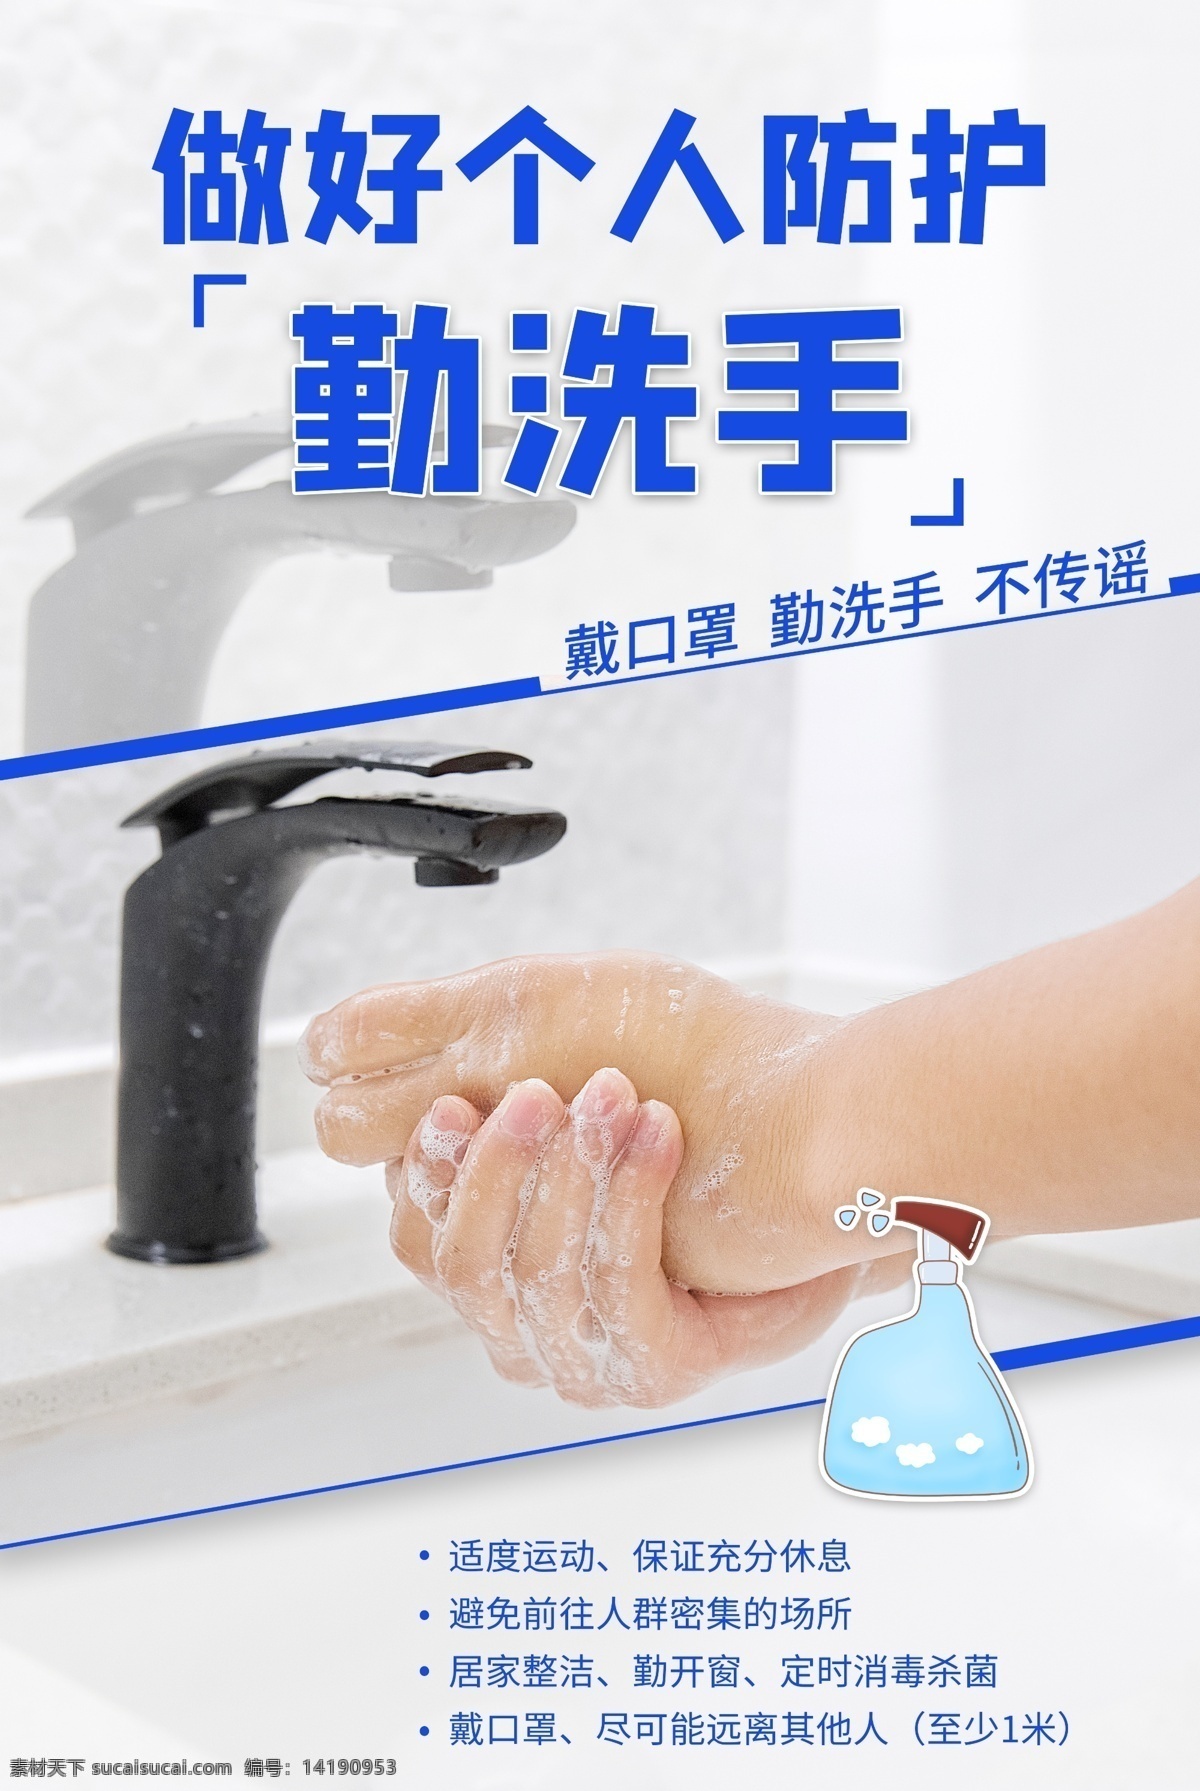 勤 洗手 个人 防护 社会 宣传海报 勤洗手 个人防护 宣传 海报 公益